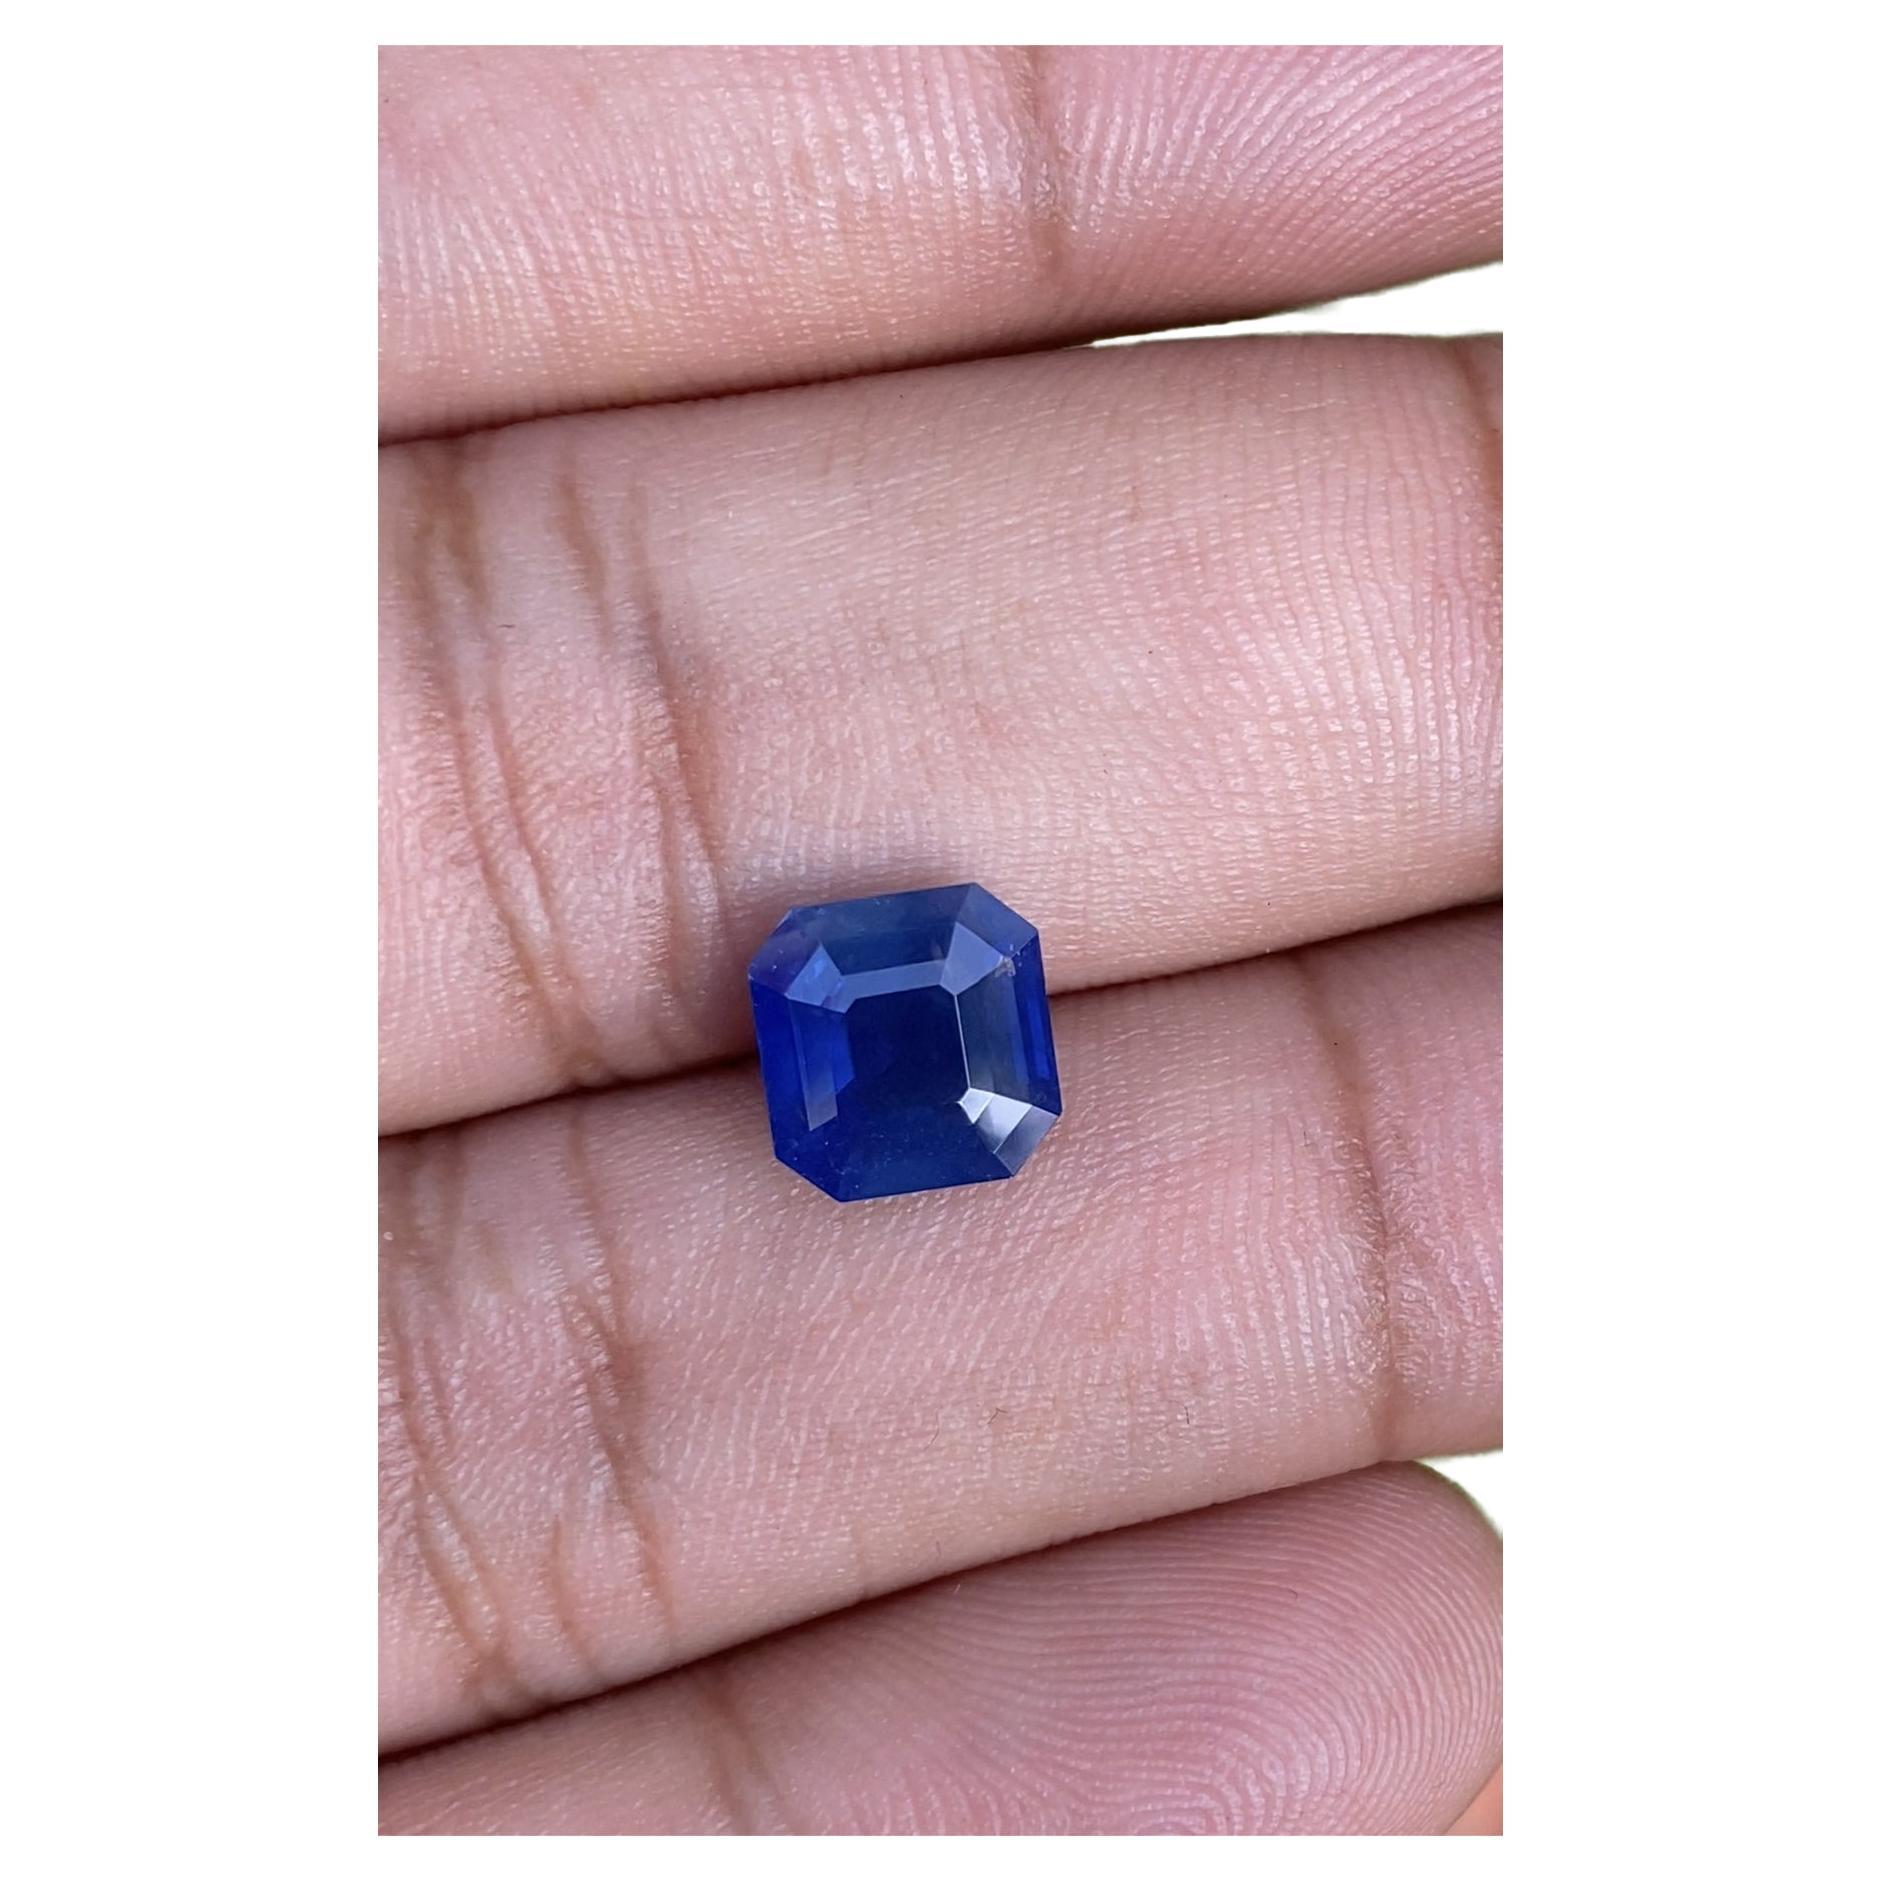 3,10 ct Natürlicher Blauer Saphir Ceylon Ursprung Edelstein Erhitzt 